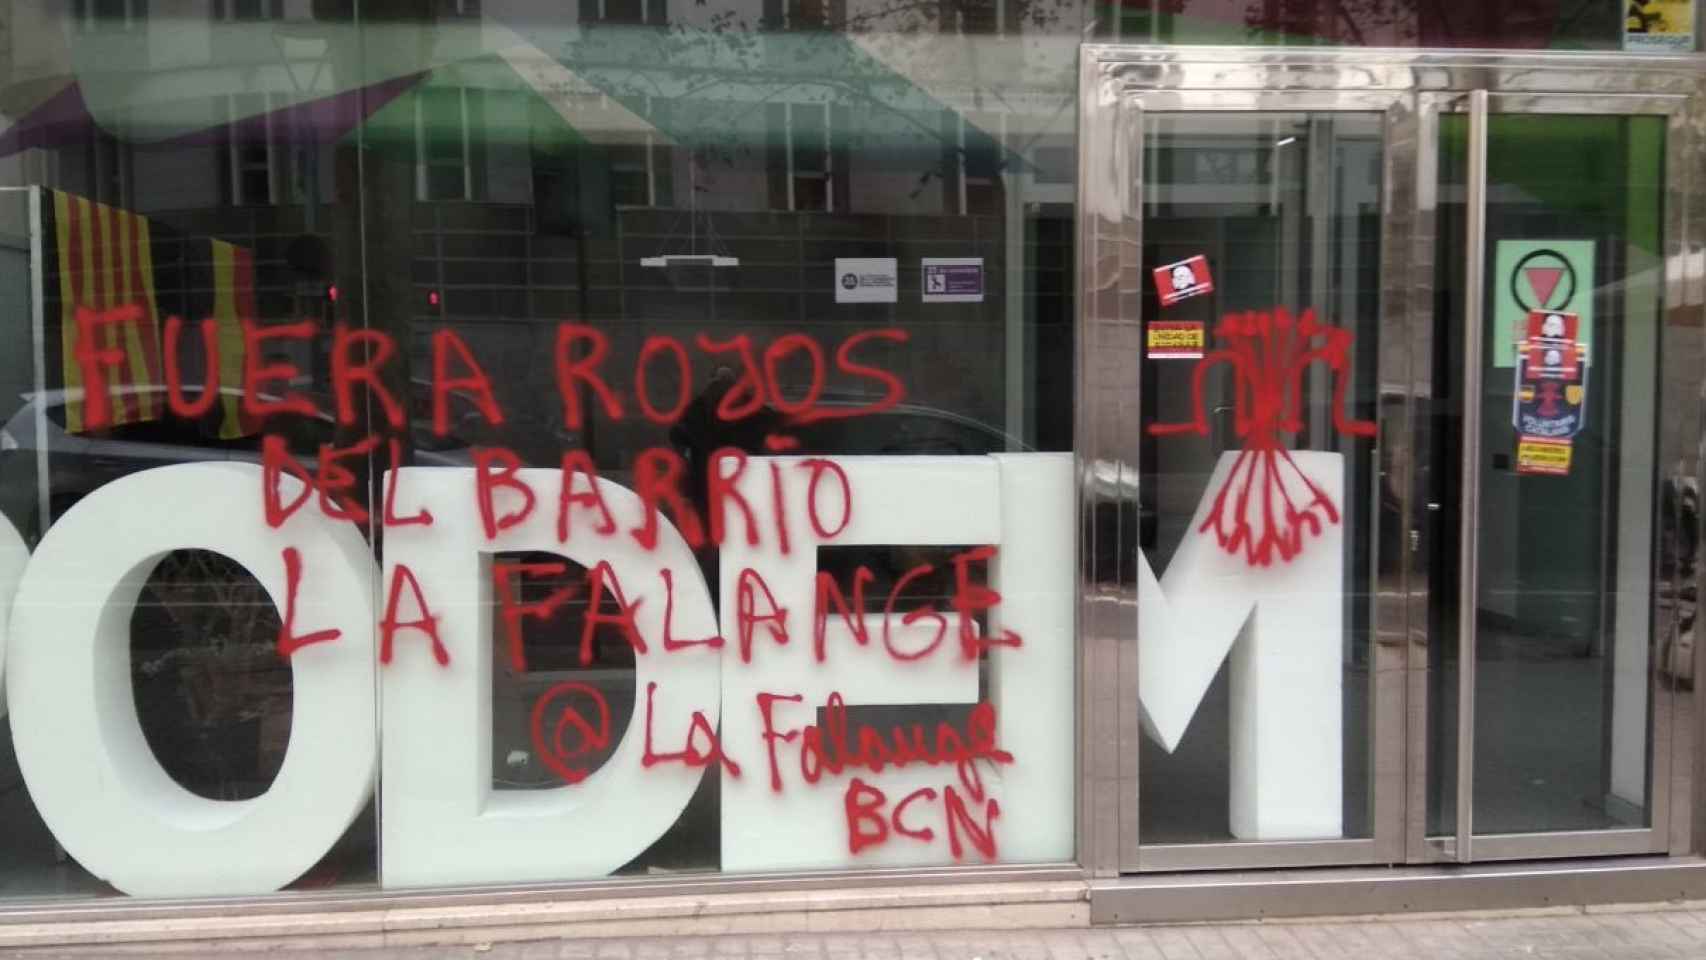 La sede de Podemos en Cataluña amanece con pintadas falangistas / TWITTER